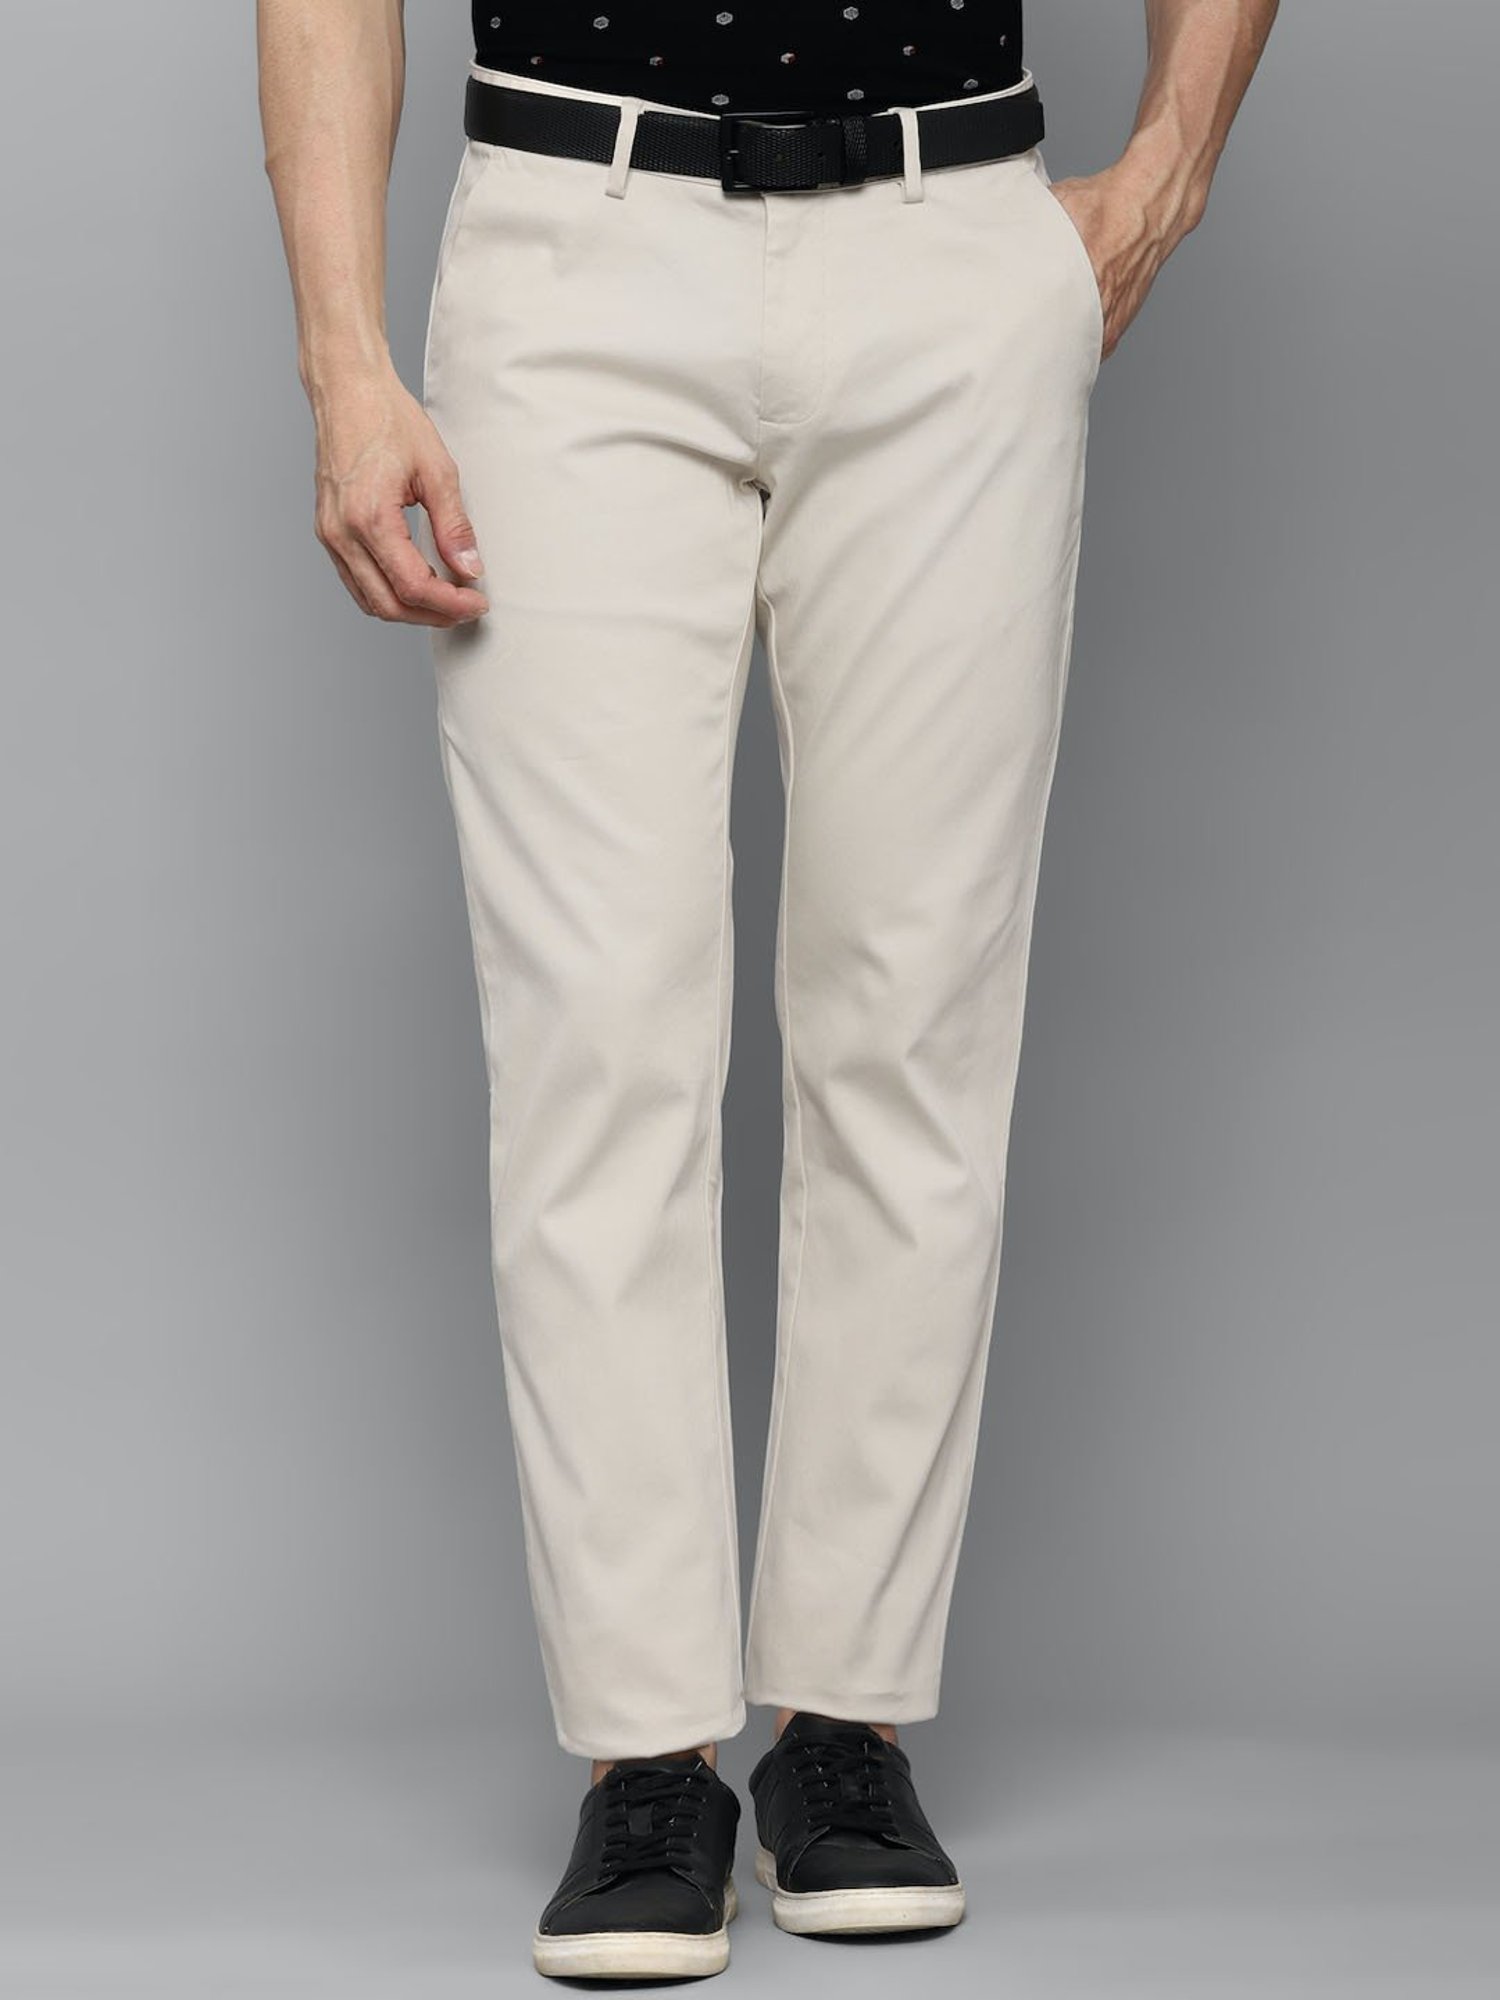 Buy Beige Trousers  Pants for Men by ALLEN SOLLY Online  Ajiocom